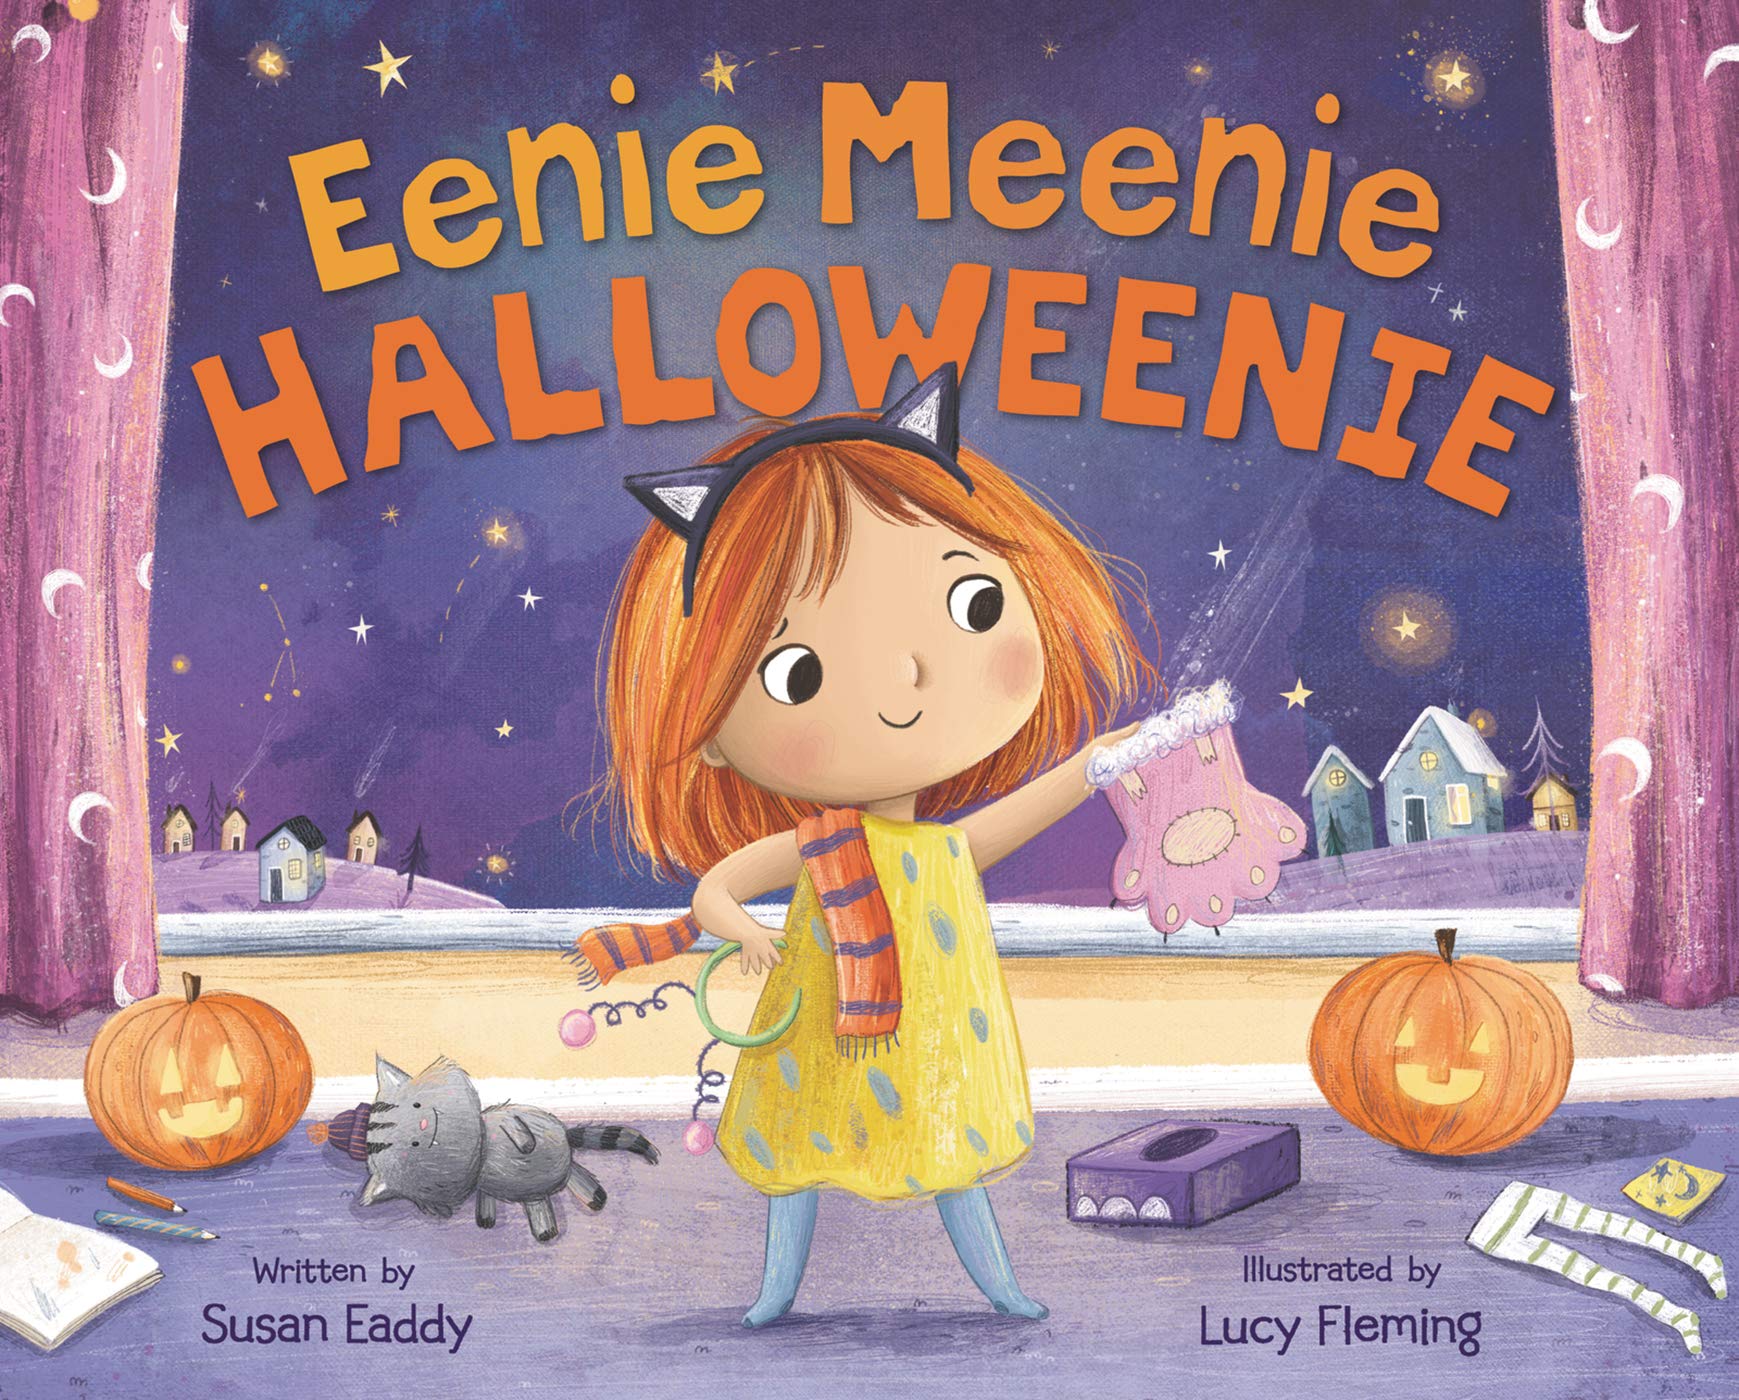 Eenie Meenie Halloweenie.